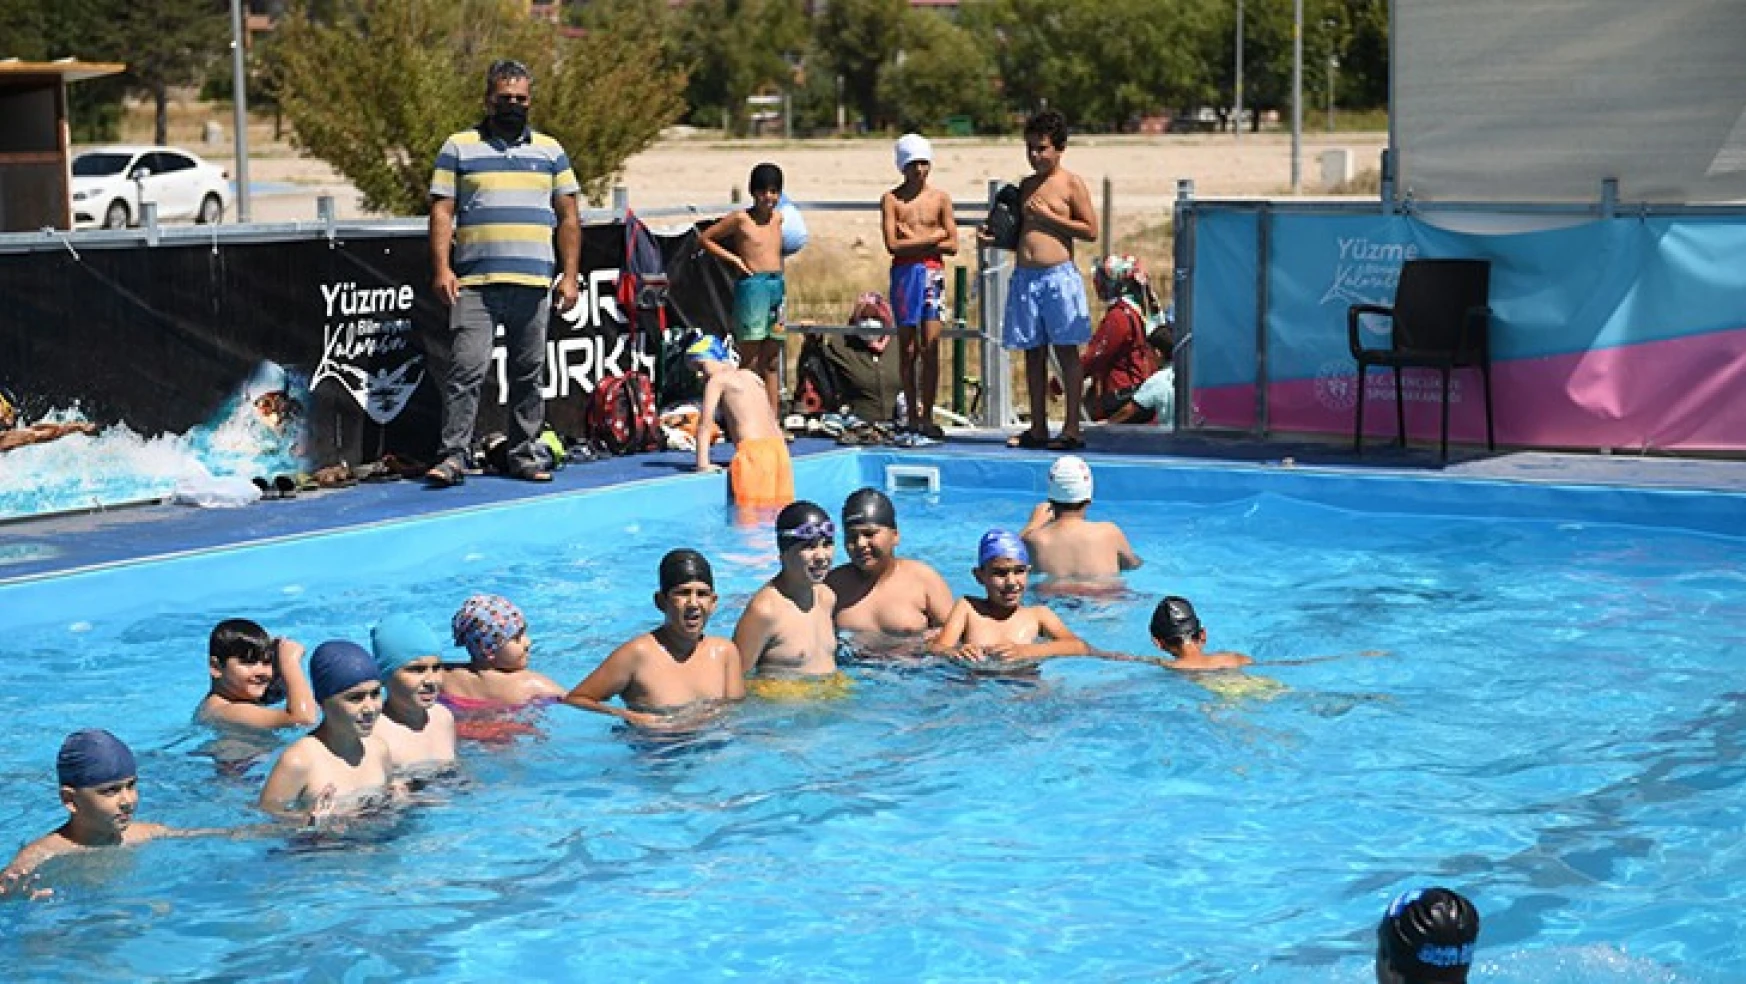 Elbistan'da 7'den 70'e herkes yüzme öğreniyor